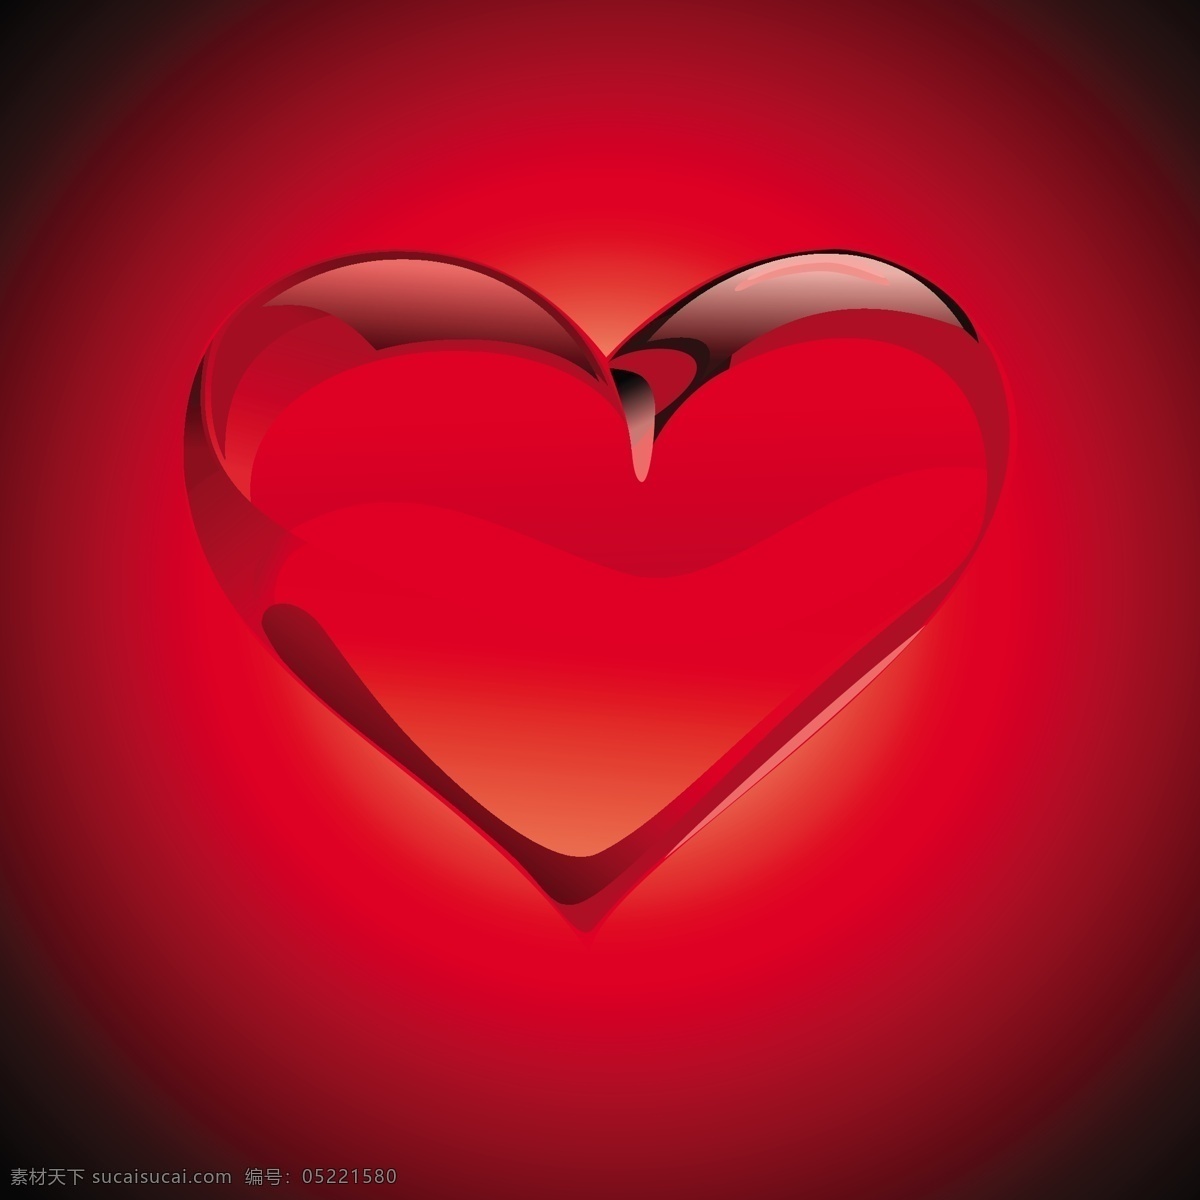 矢量 浪漫 心形 红色 节日 背景 爱情 矢量素材 节日素材 其他节日